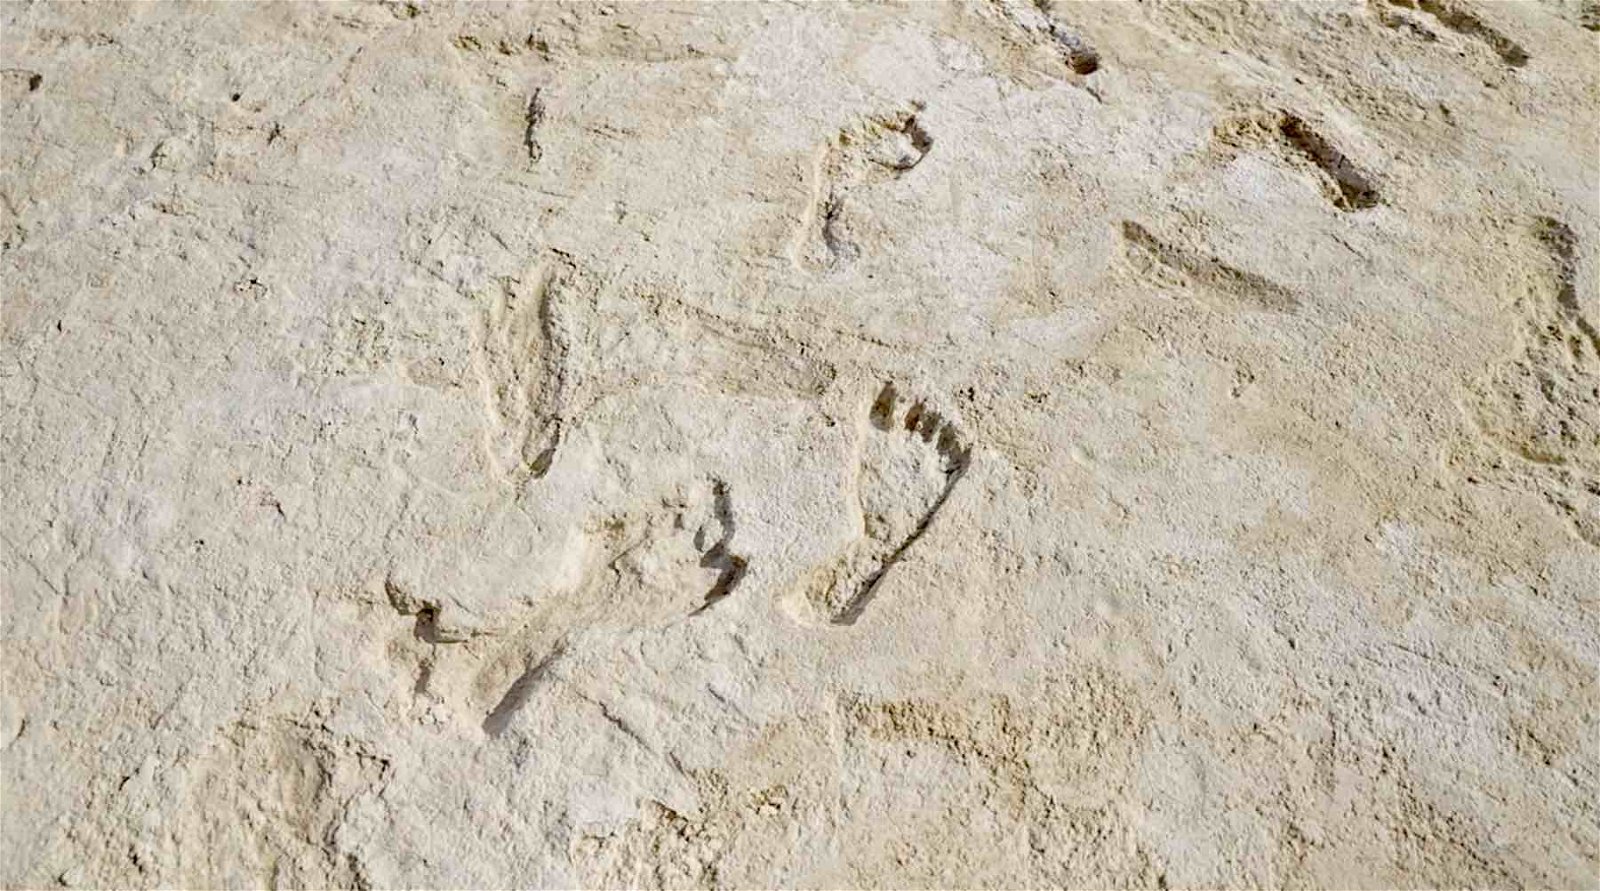 fossil human footprints